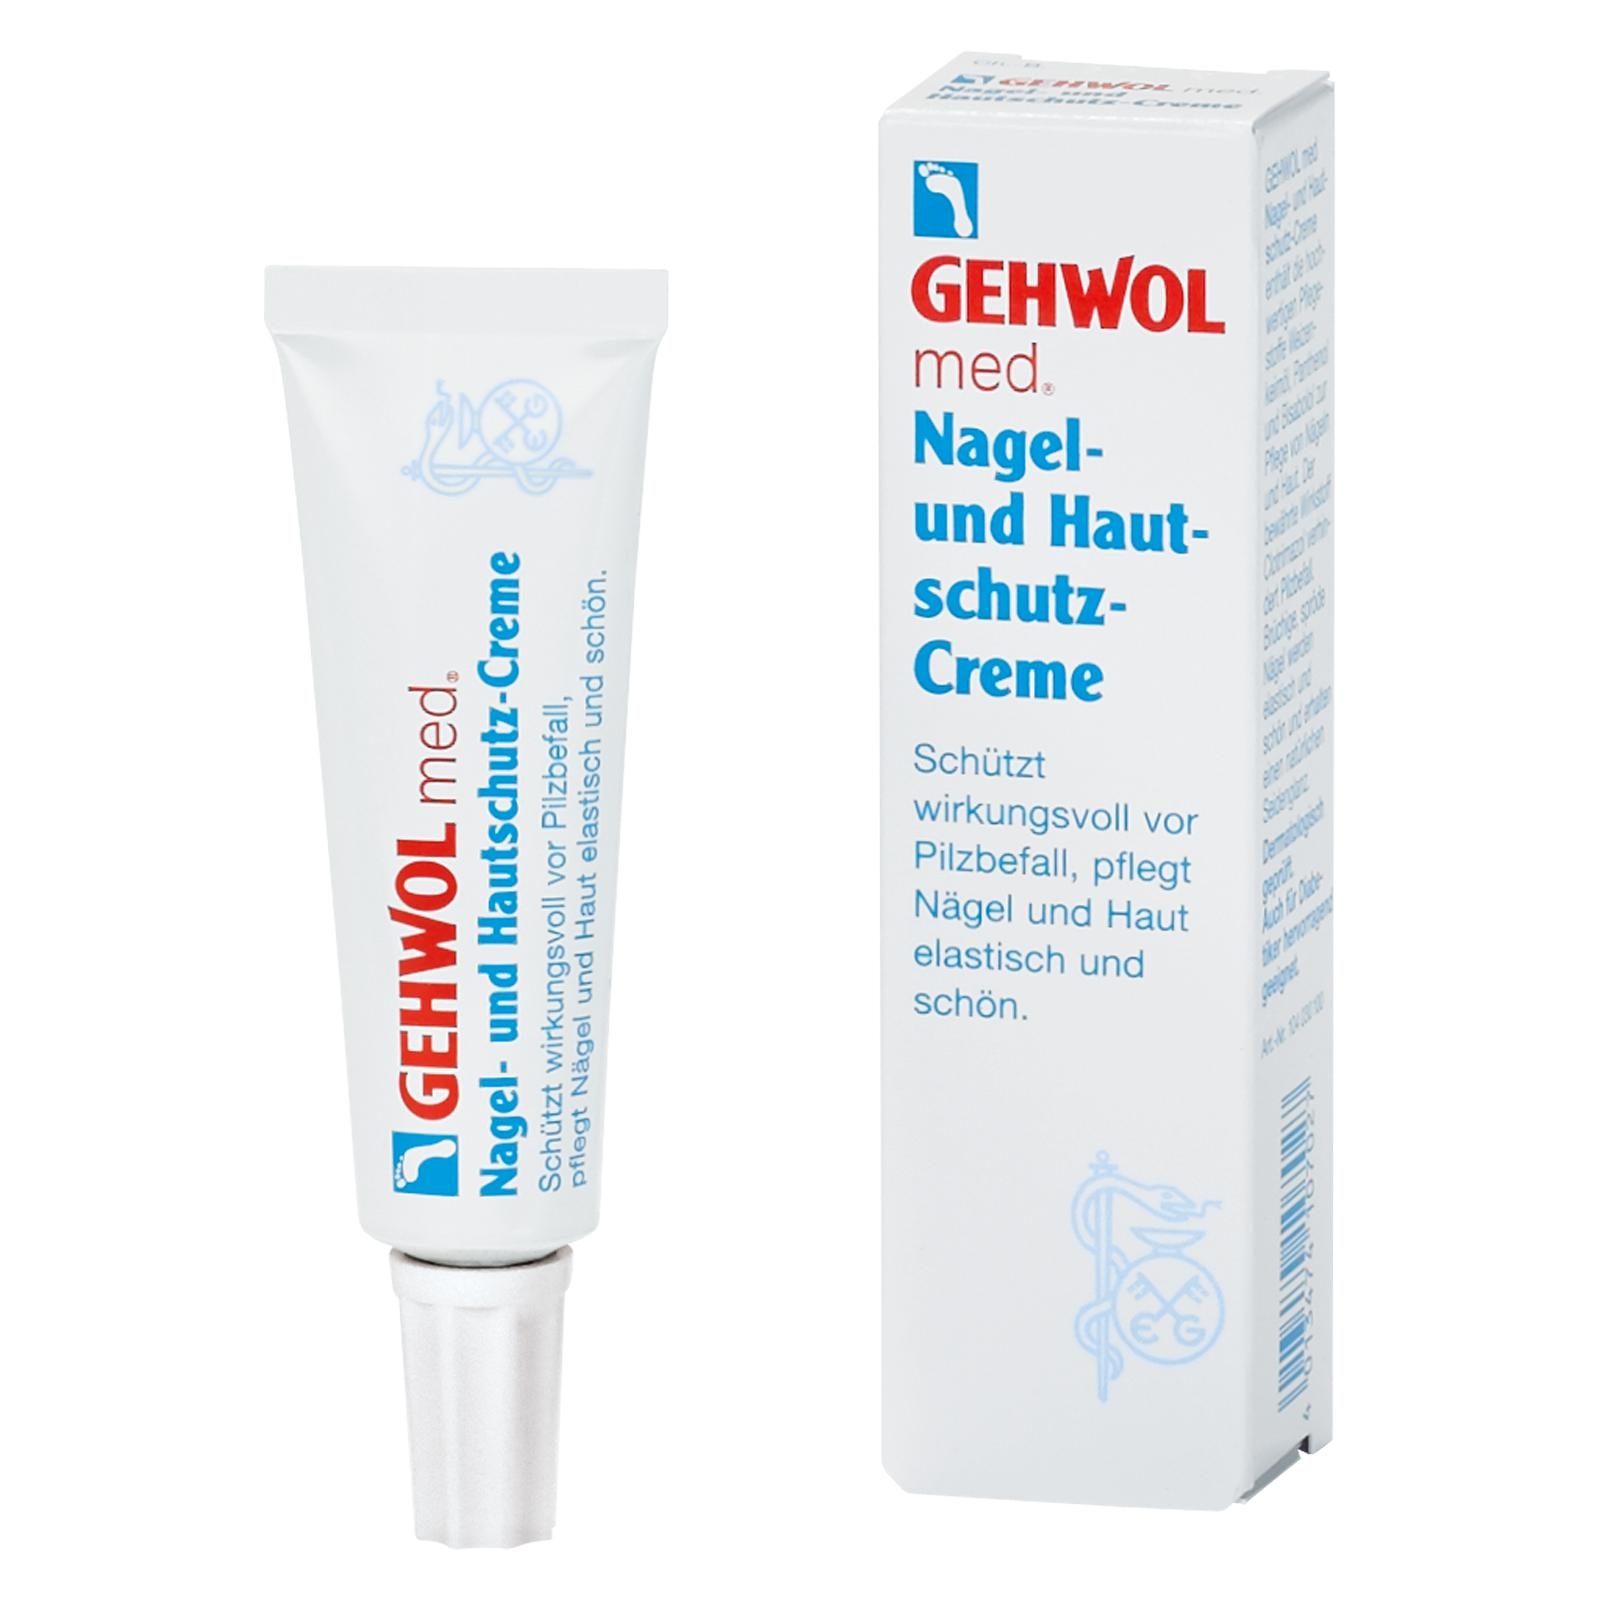 GEHWOL med Nagel- und Hautschutz-Creme 15 ml Tube